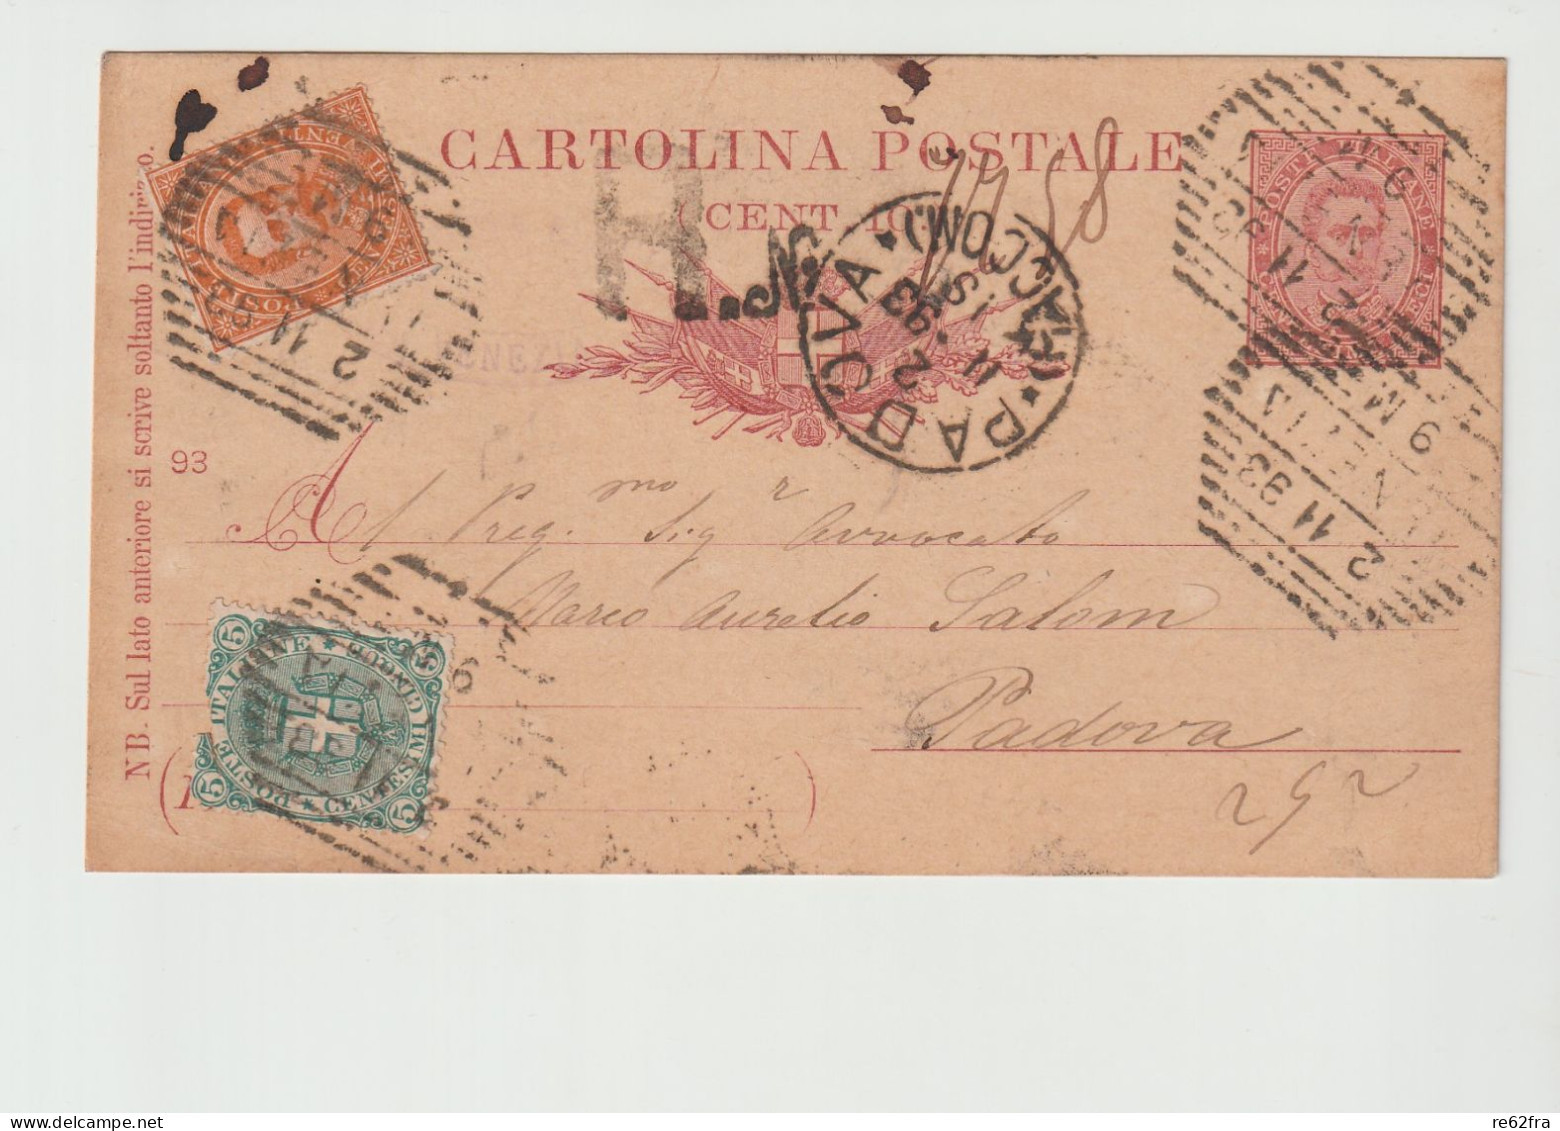 Umberto I° Intero Postale C.10-93, Spedita Nel 1893 Con Raccomandata E Aggiunta Di Francobolli Per C.25 - Interi Postali